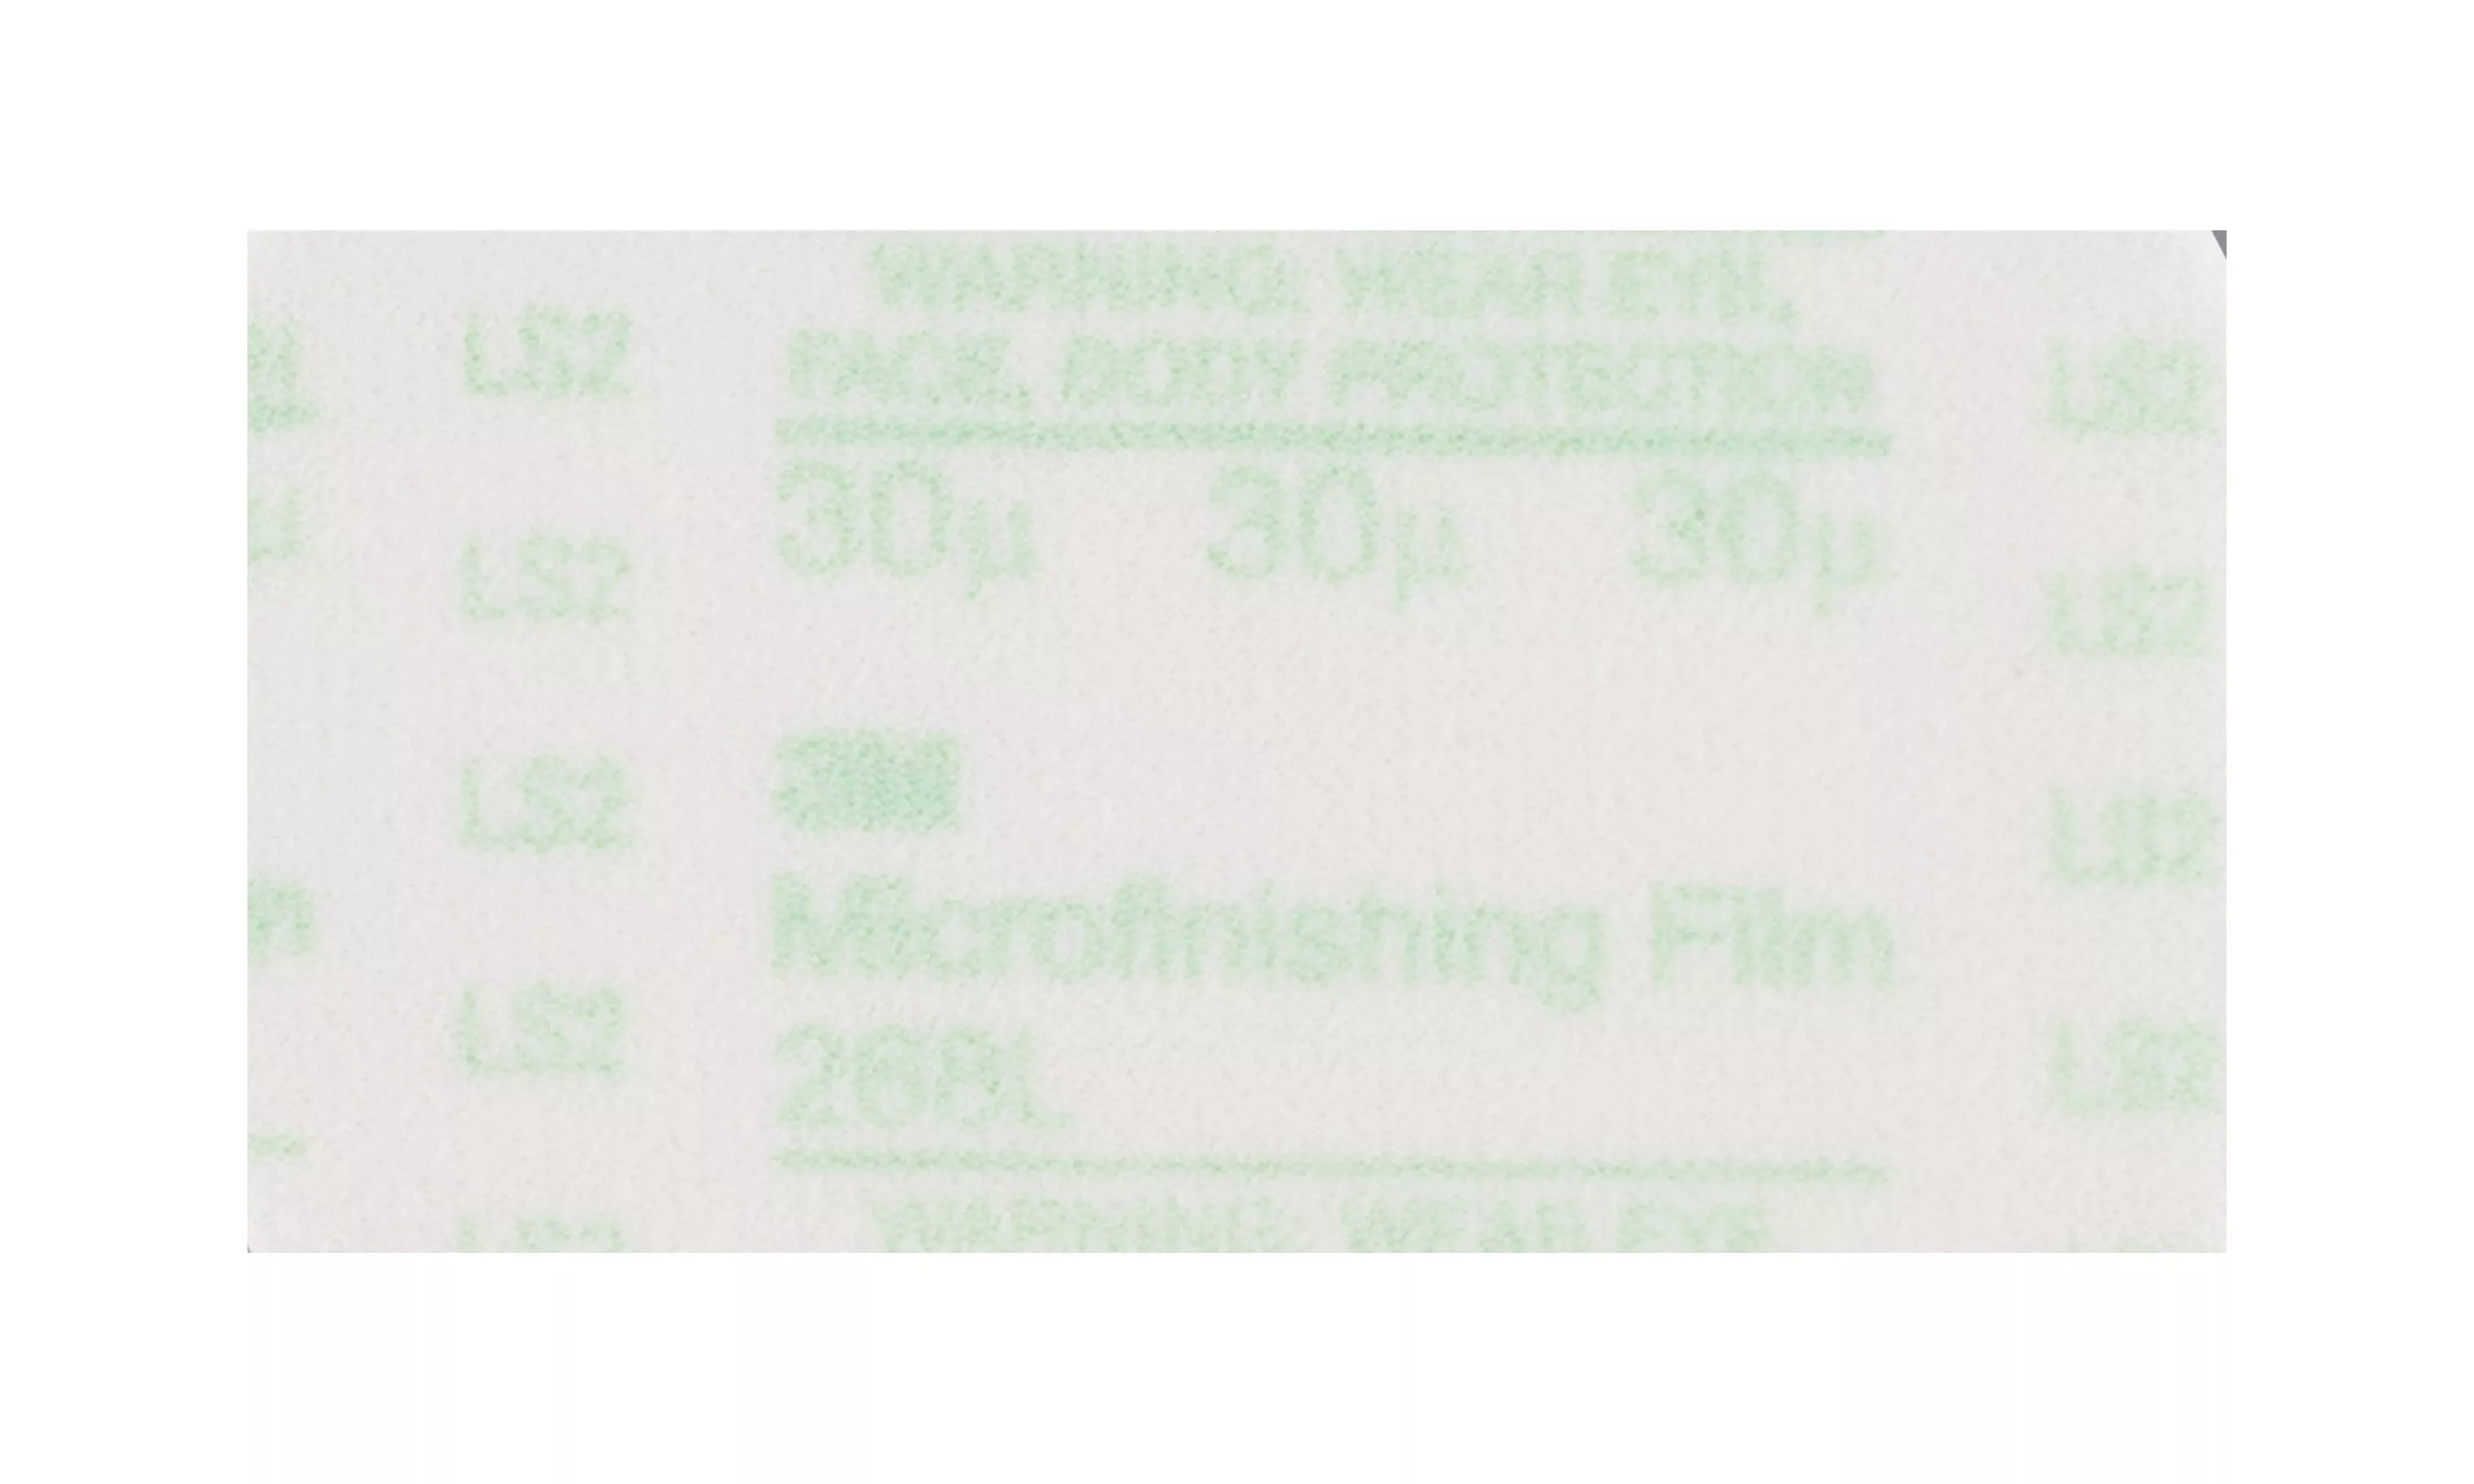 3M™ Microfinishing PSA Film Sheet 268L, 8 1/2 in x 11 in, 30 Mic, Type
D, 200 ea/Case